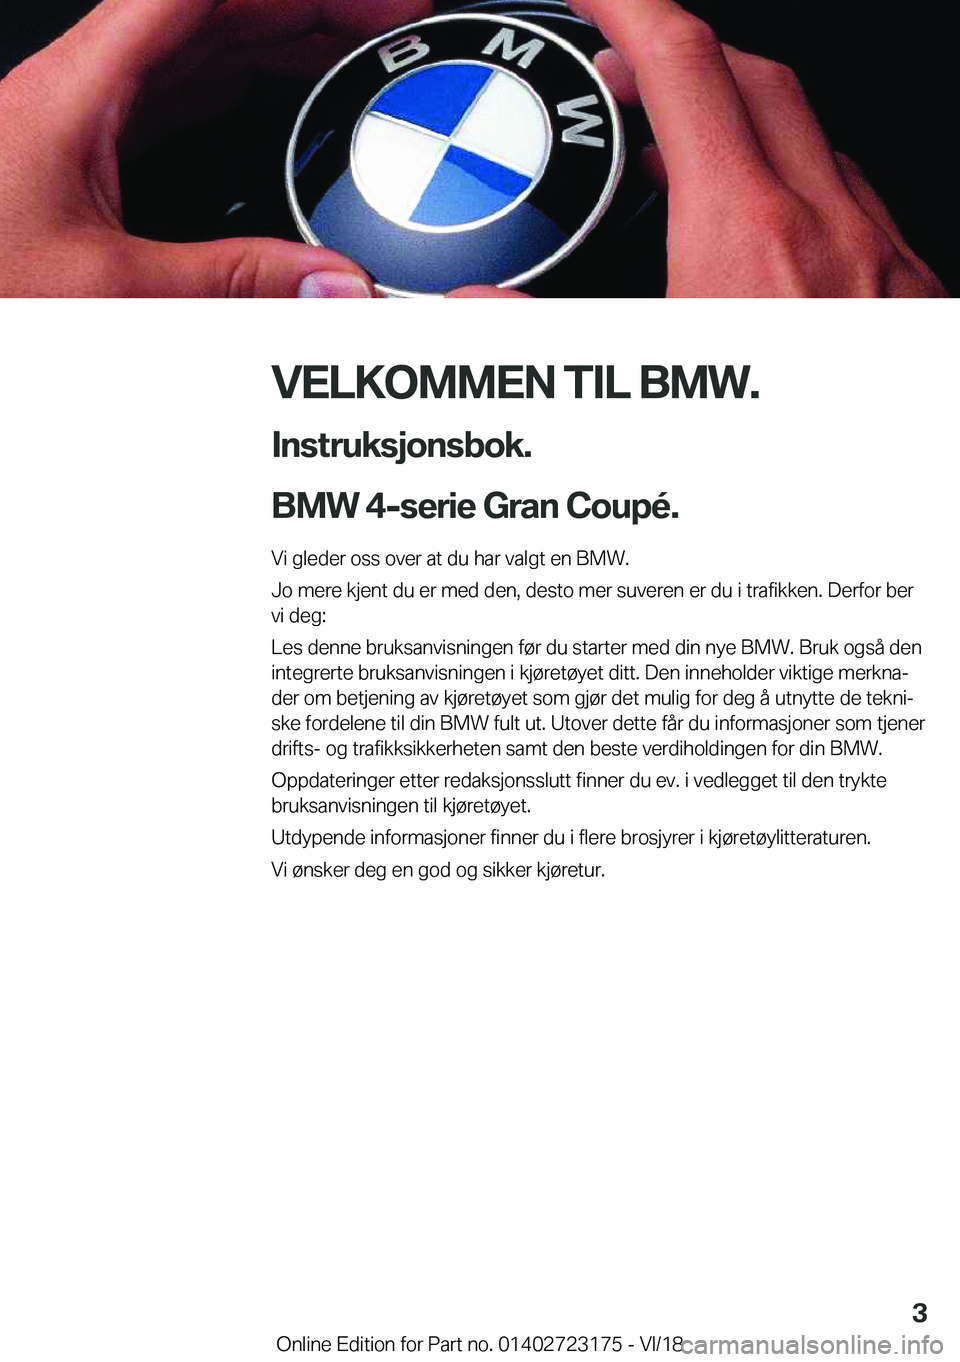 BMW 4 SERIES COUPE 2019  InstruksjonsbØker (in Norwegian) �V�E�L�K�O�M�M�E�N��T�I�L��B�M�W�.�I�n�s�t�r�u�k�s�j�o�n�s�b�o�k�.
�B�M�W��4�-�s�e�r�i�e��G�r�a�n��C�o�u�p�